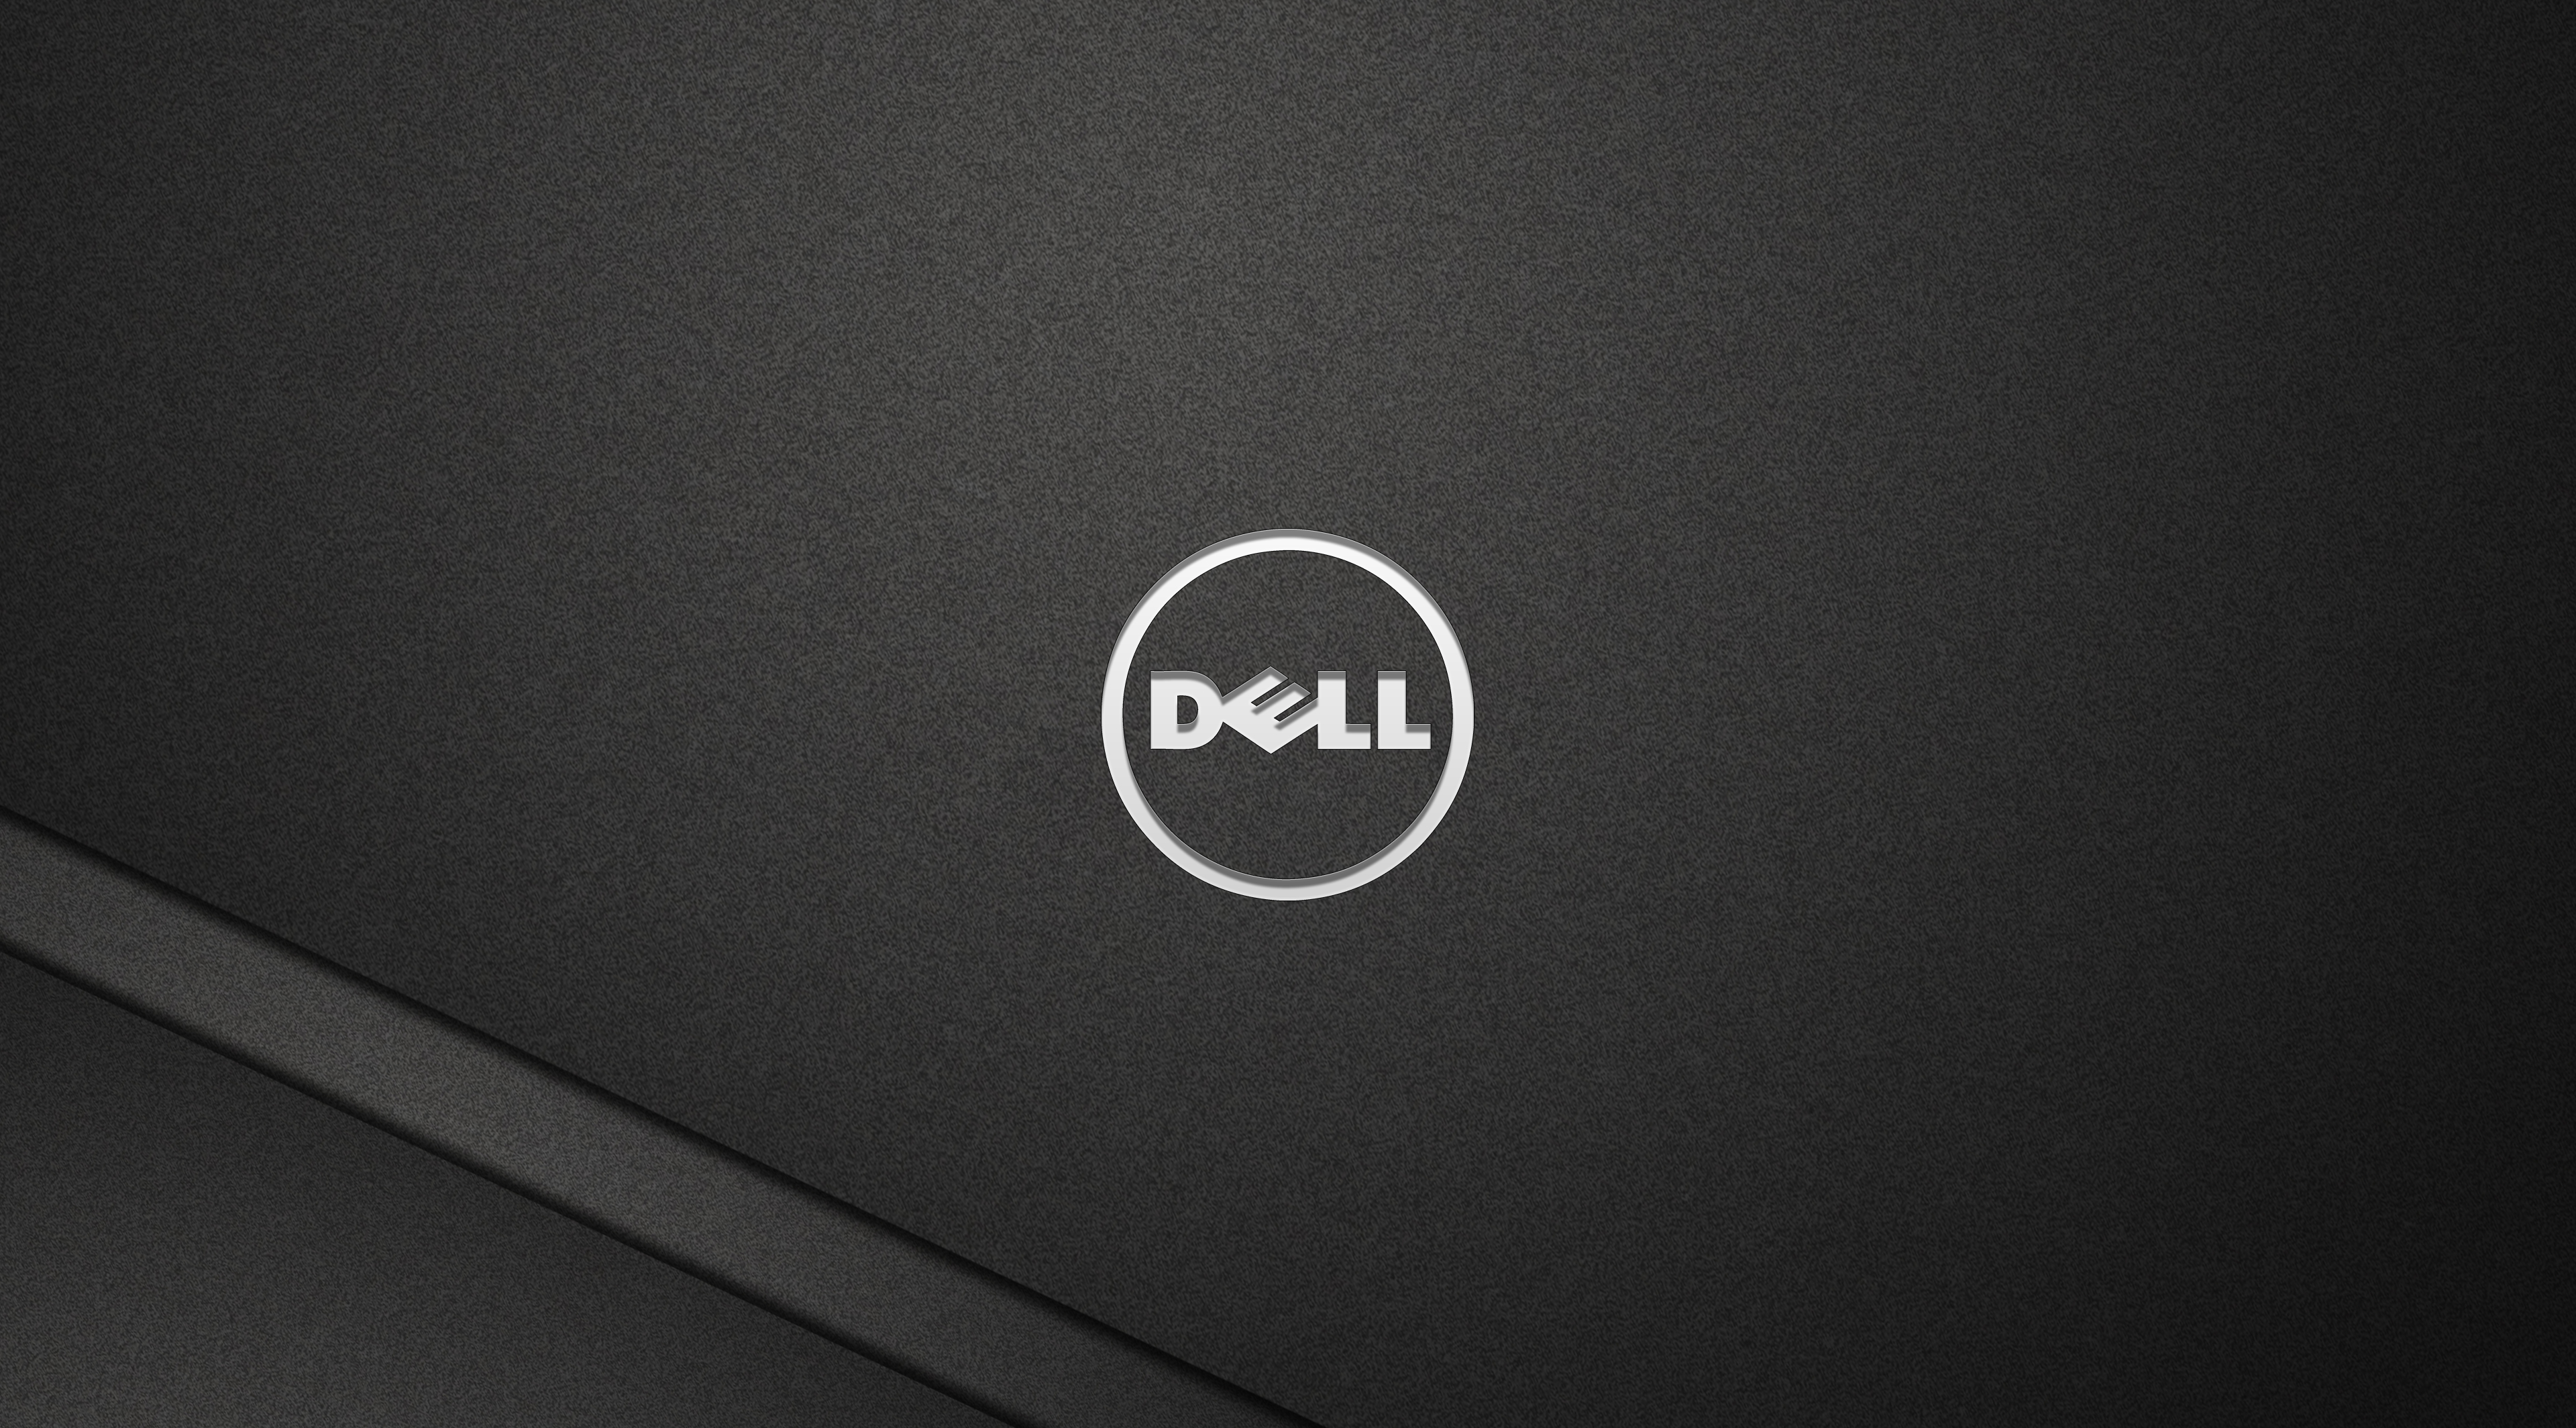  Dell Full HD Wallpaper